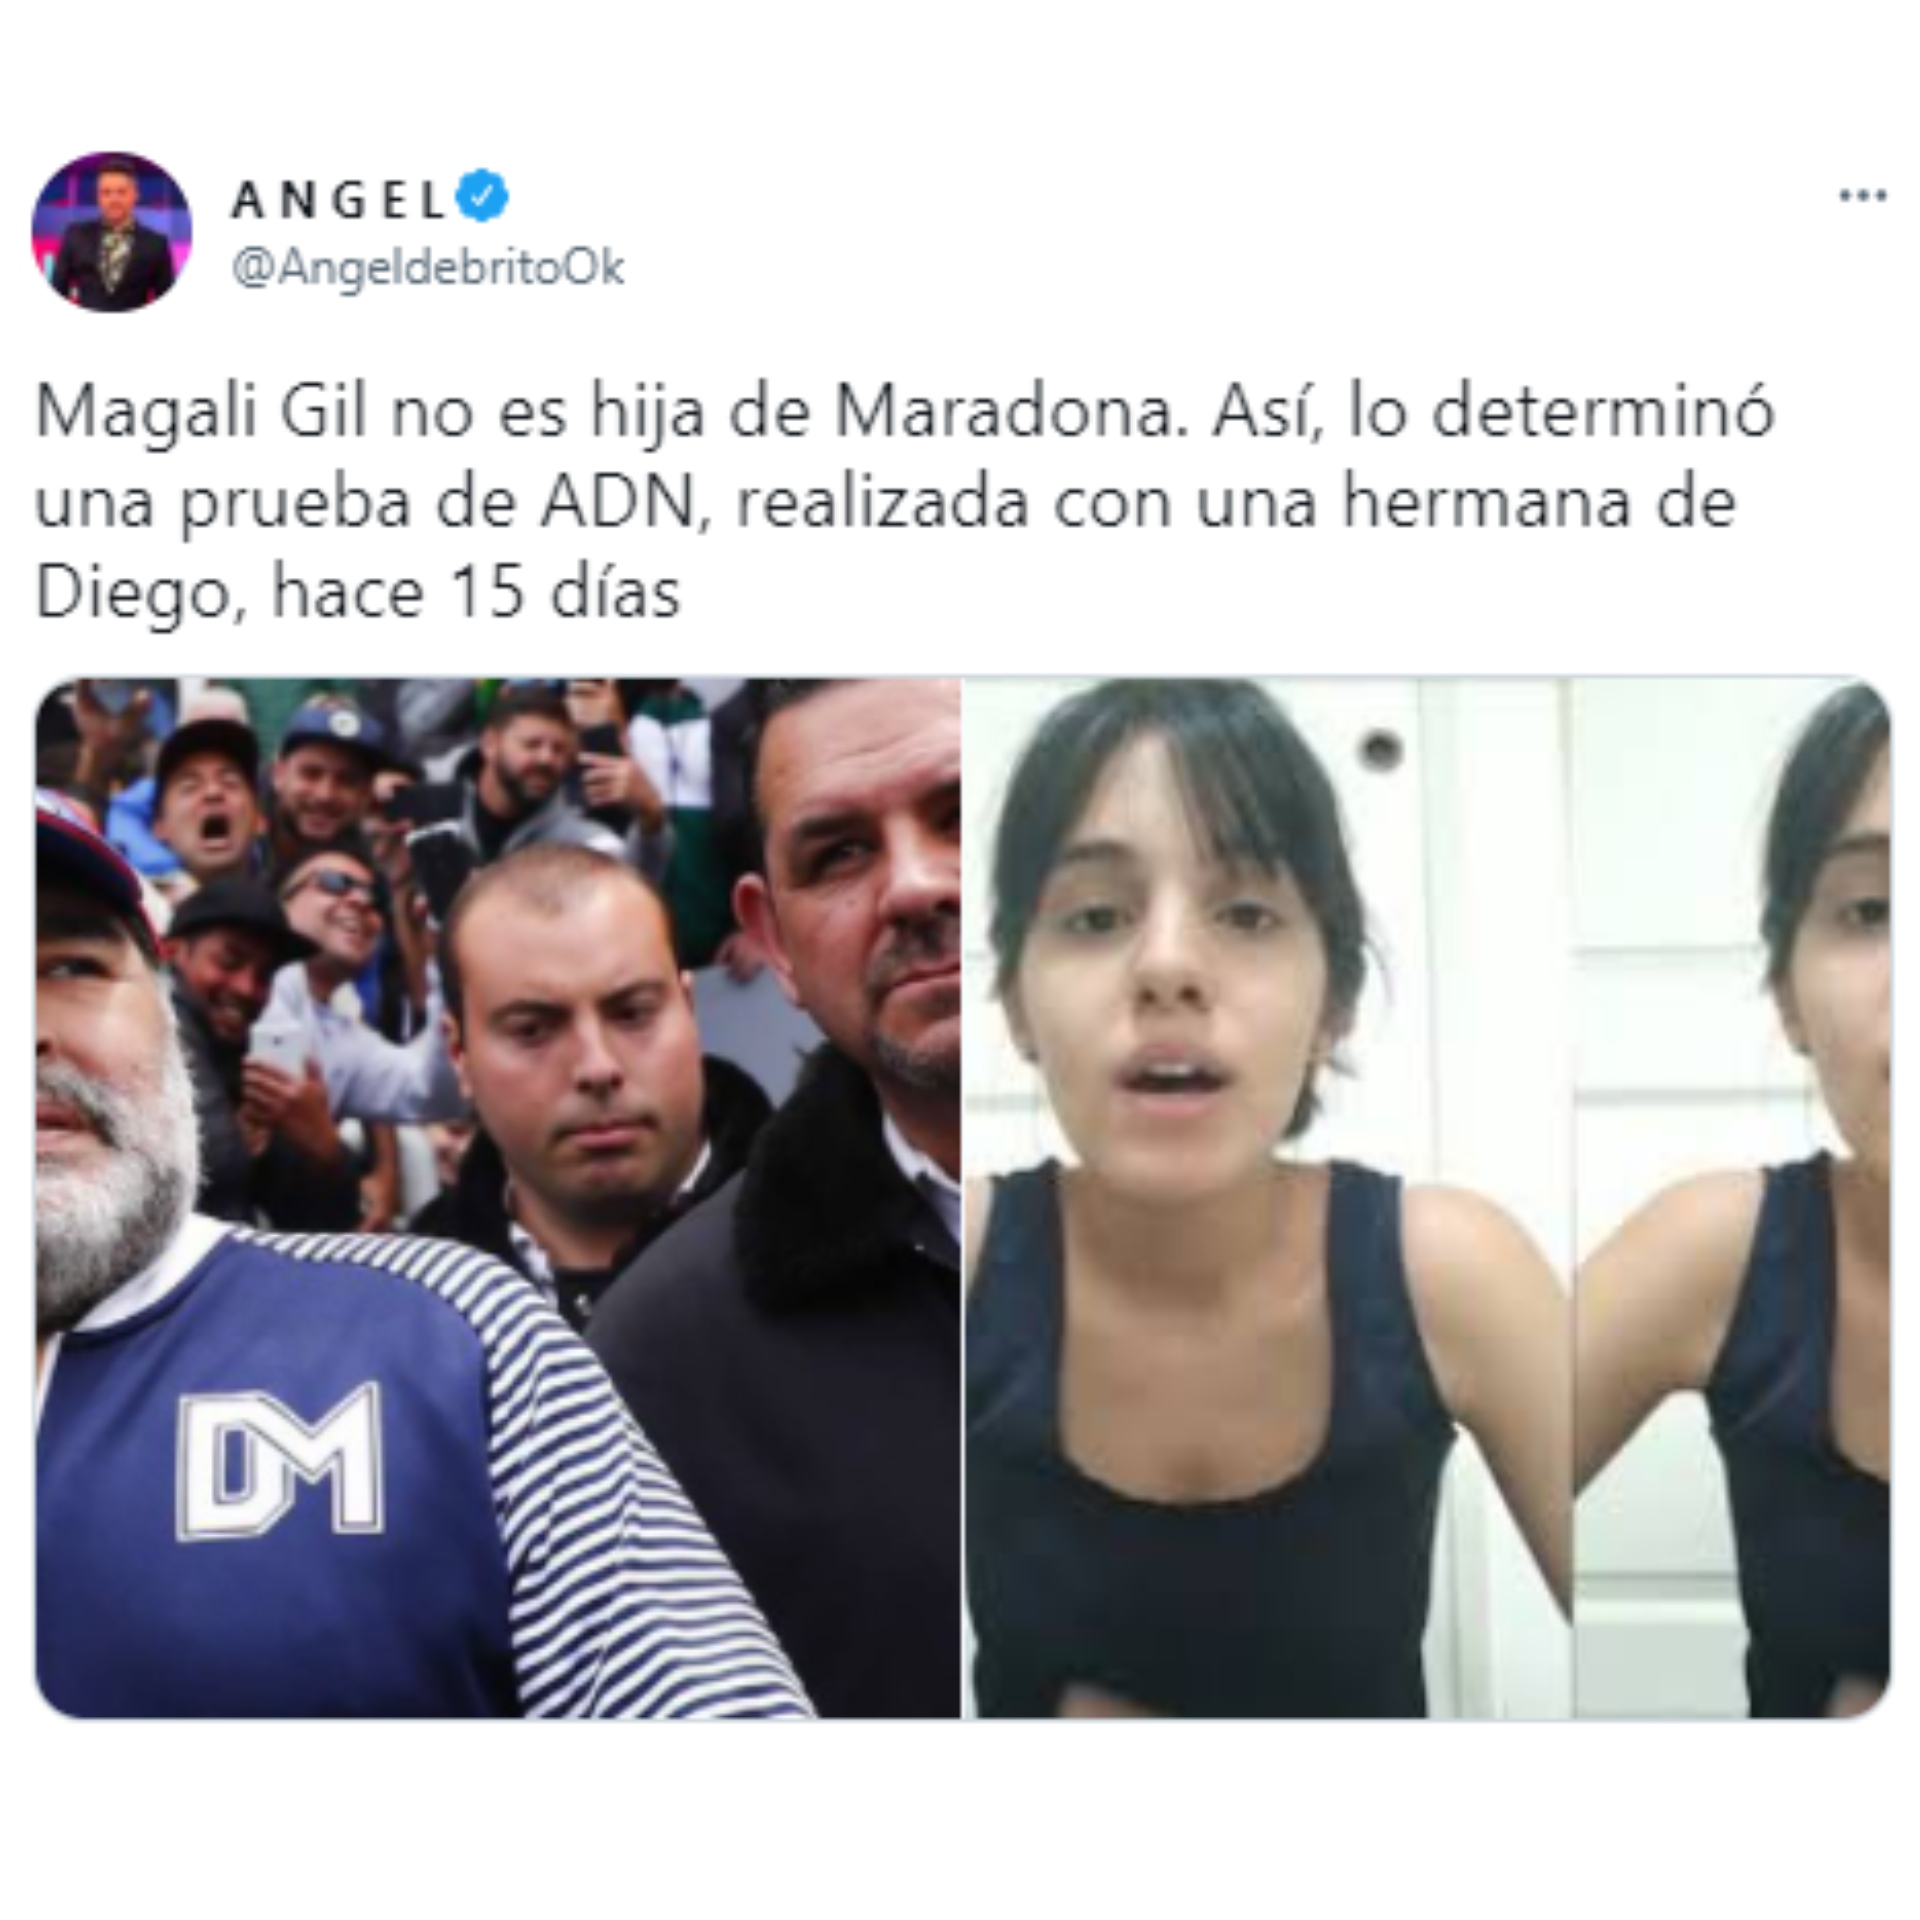 El tweet de Ángel De Brito confirmando que el ADN con la hermana de Diego Maradona determinó que no es hija del Diez